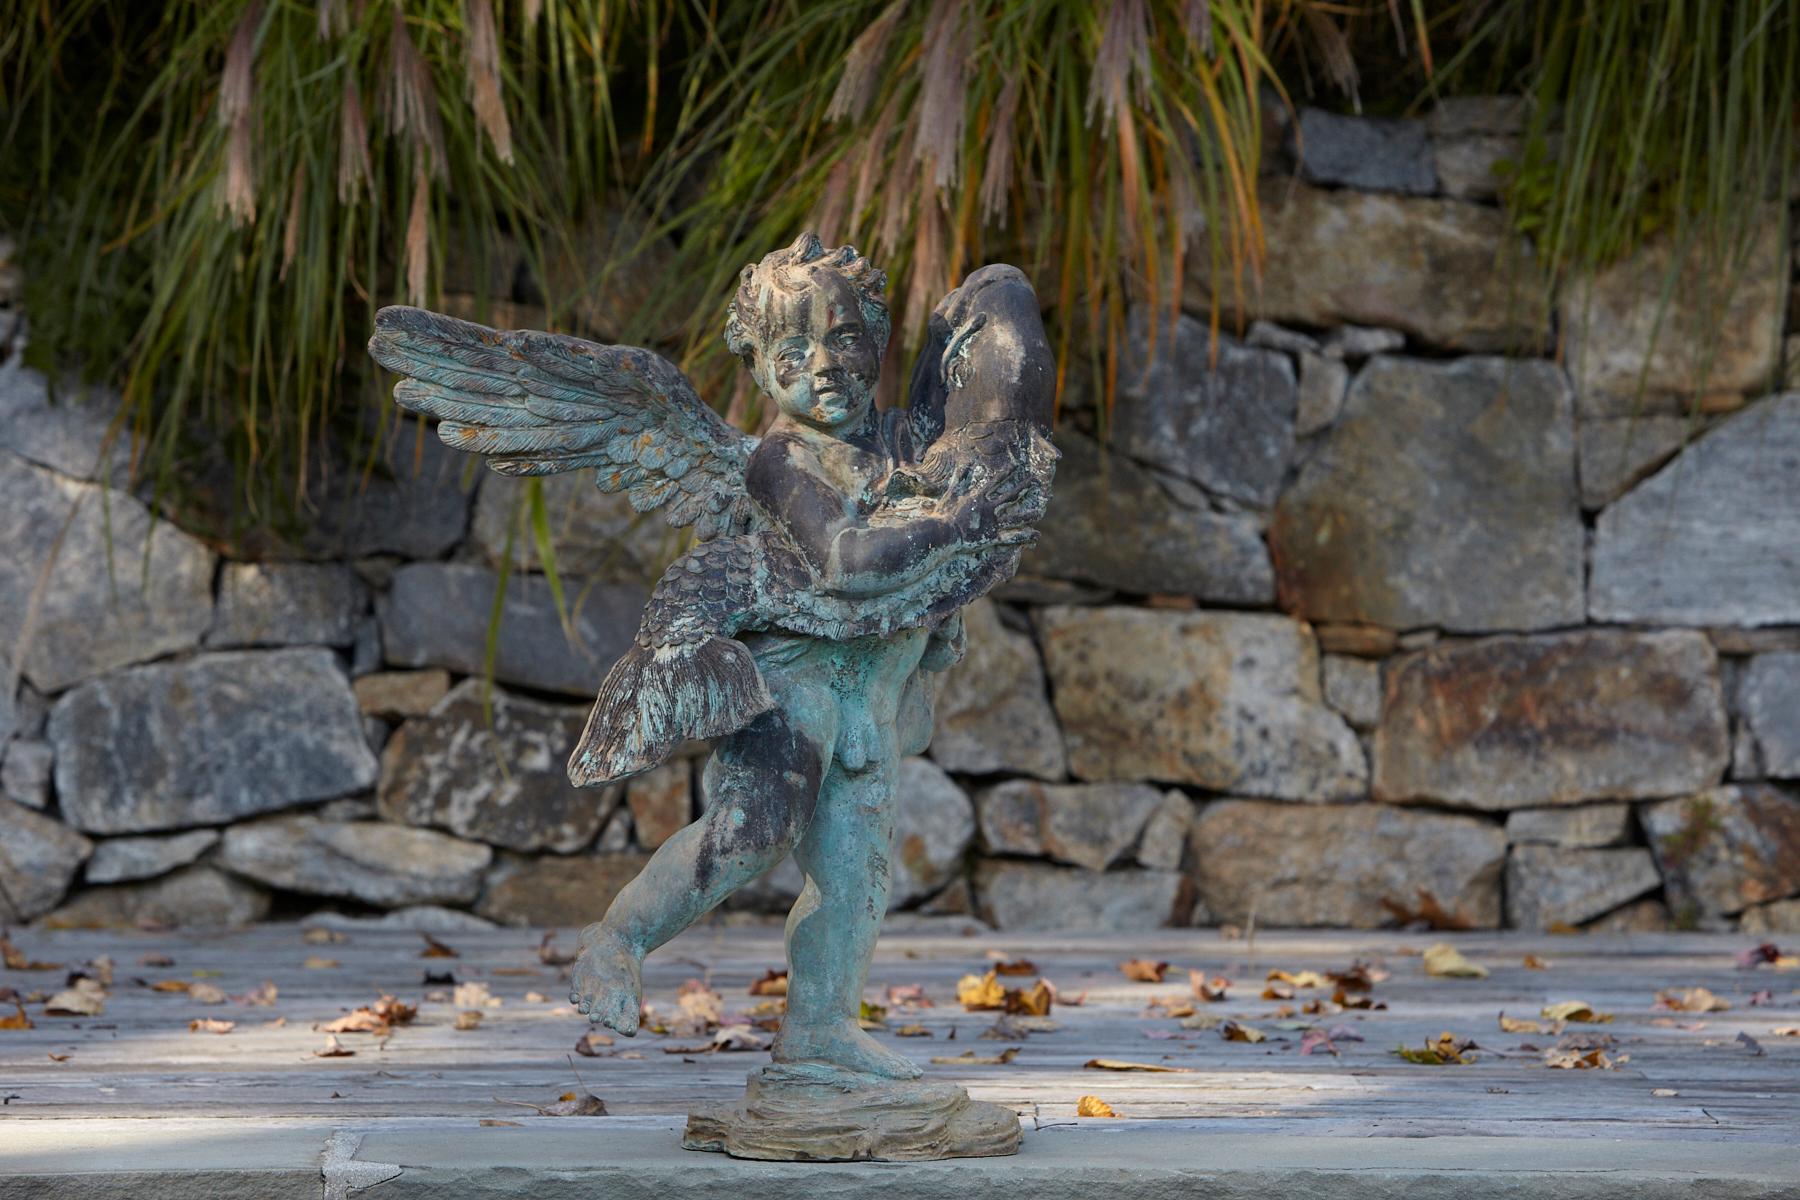 Nach Andrea del Verrocchio, eine wunderschön detaillierte bronzene Wassergarten-/Brunnenstatue eines Cherubs mit großen Flügeln, der einen Fisch in den Armen hält, ca. 1940er Jahre. Die Statue hat eine wunderbare, schöne grüne Patina. Die Statue ist